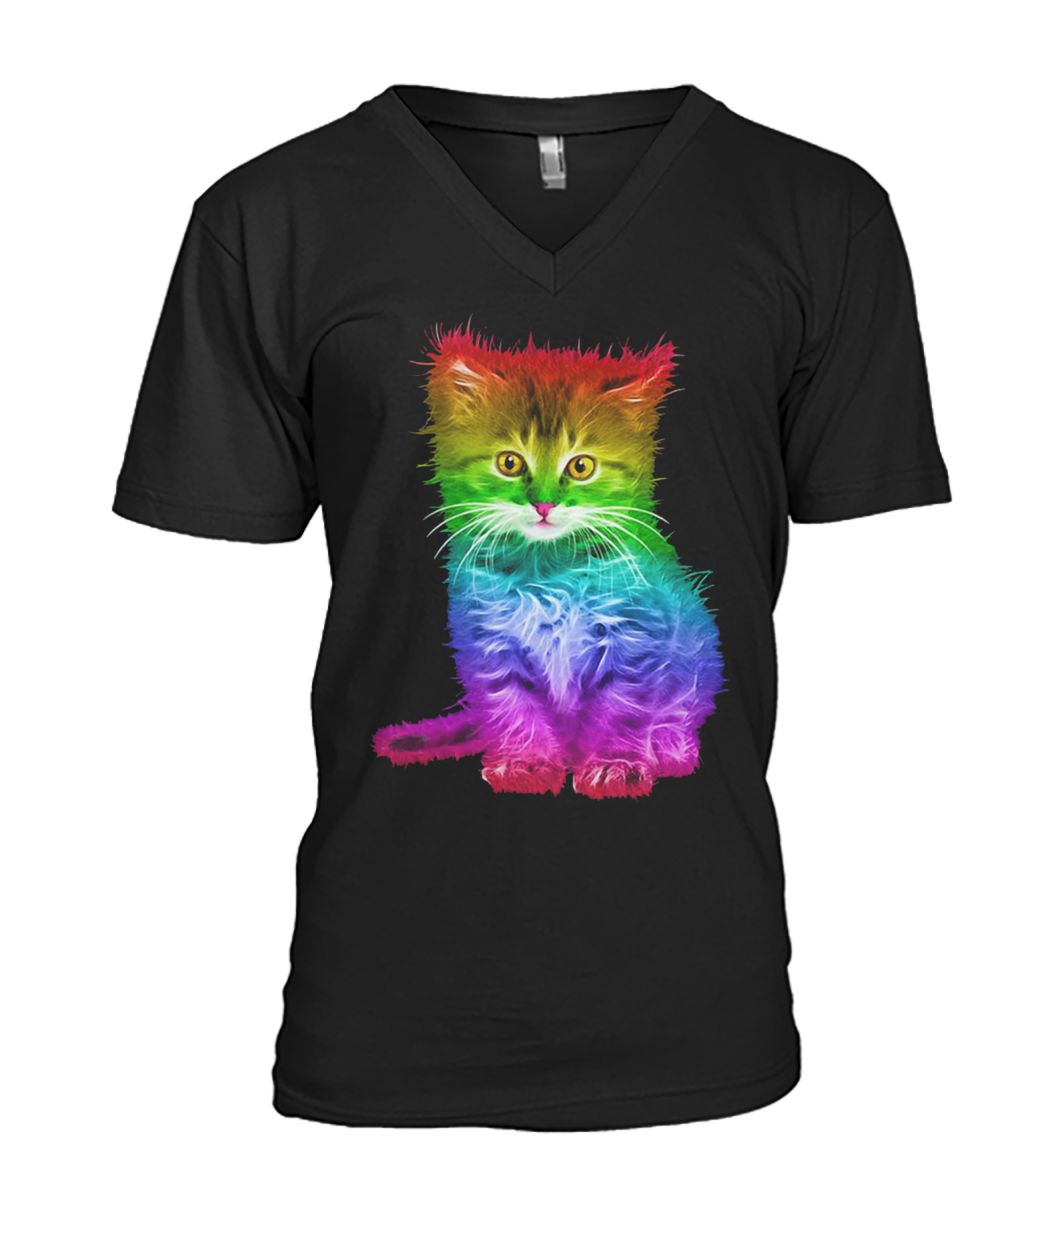 Rainbow cat lgbt gay pride awareness mens v-neck